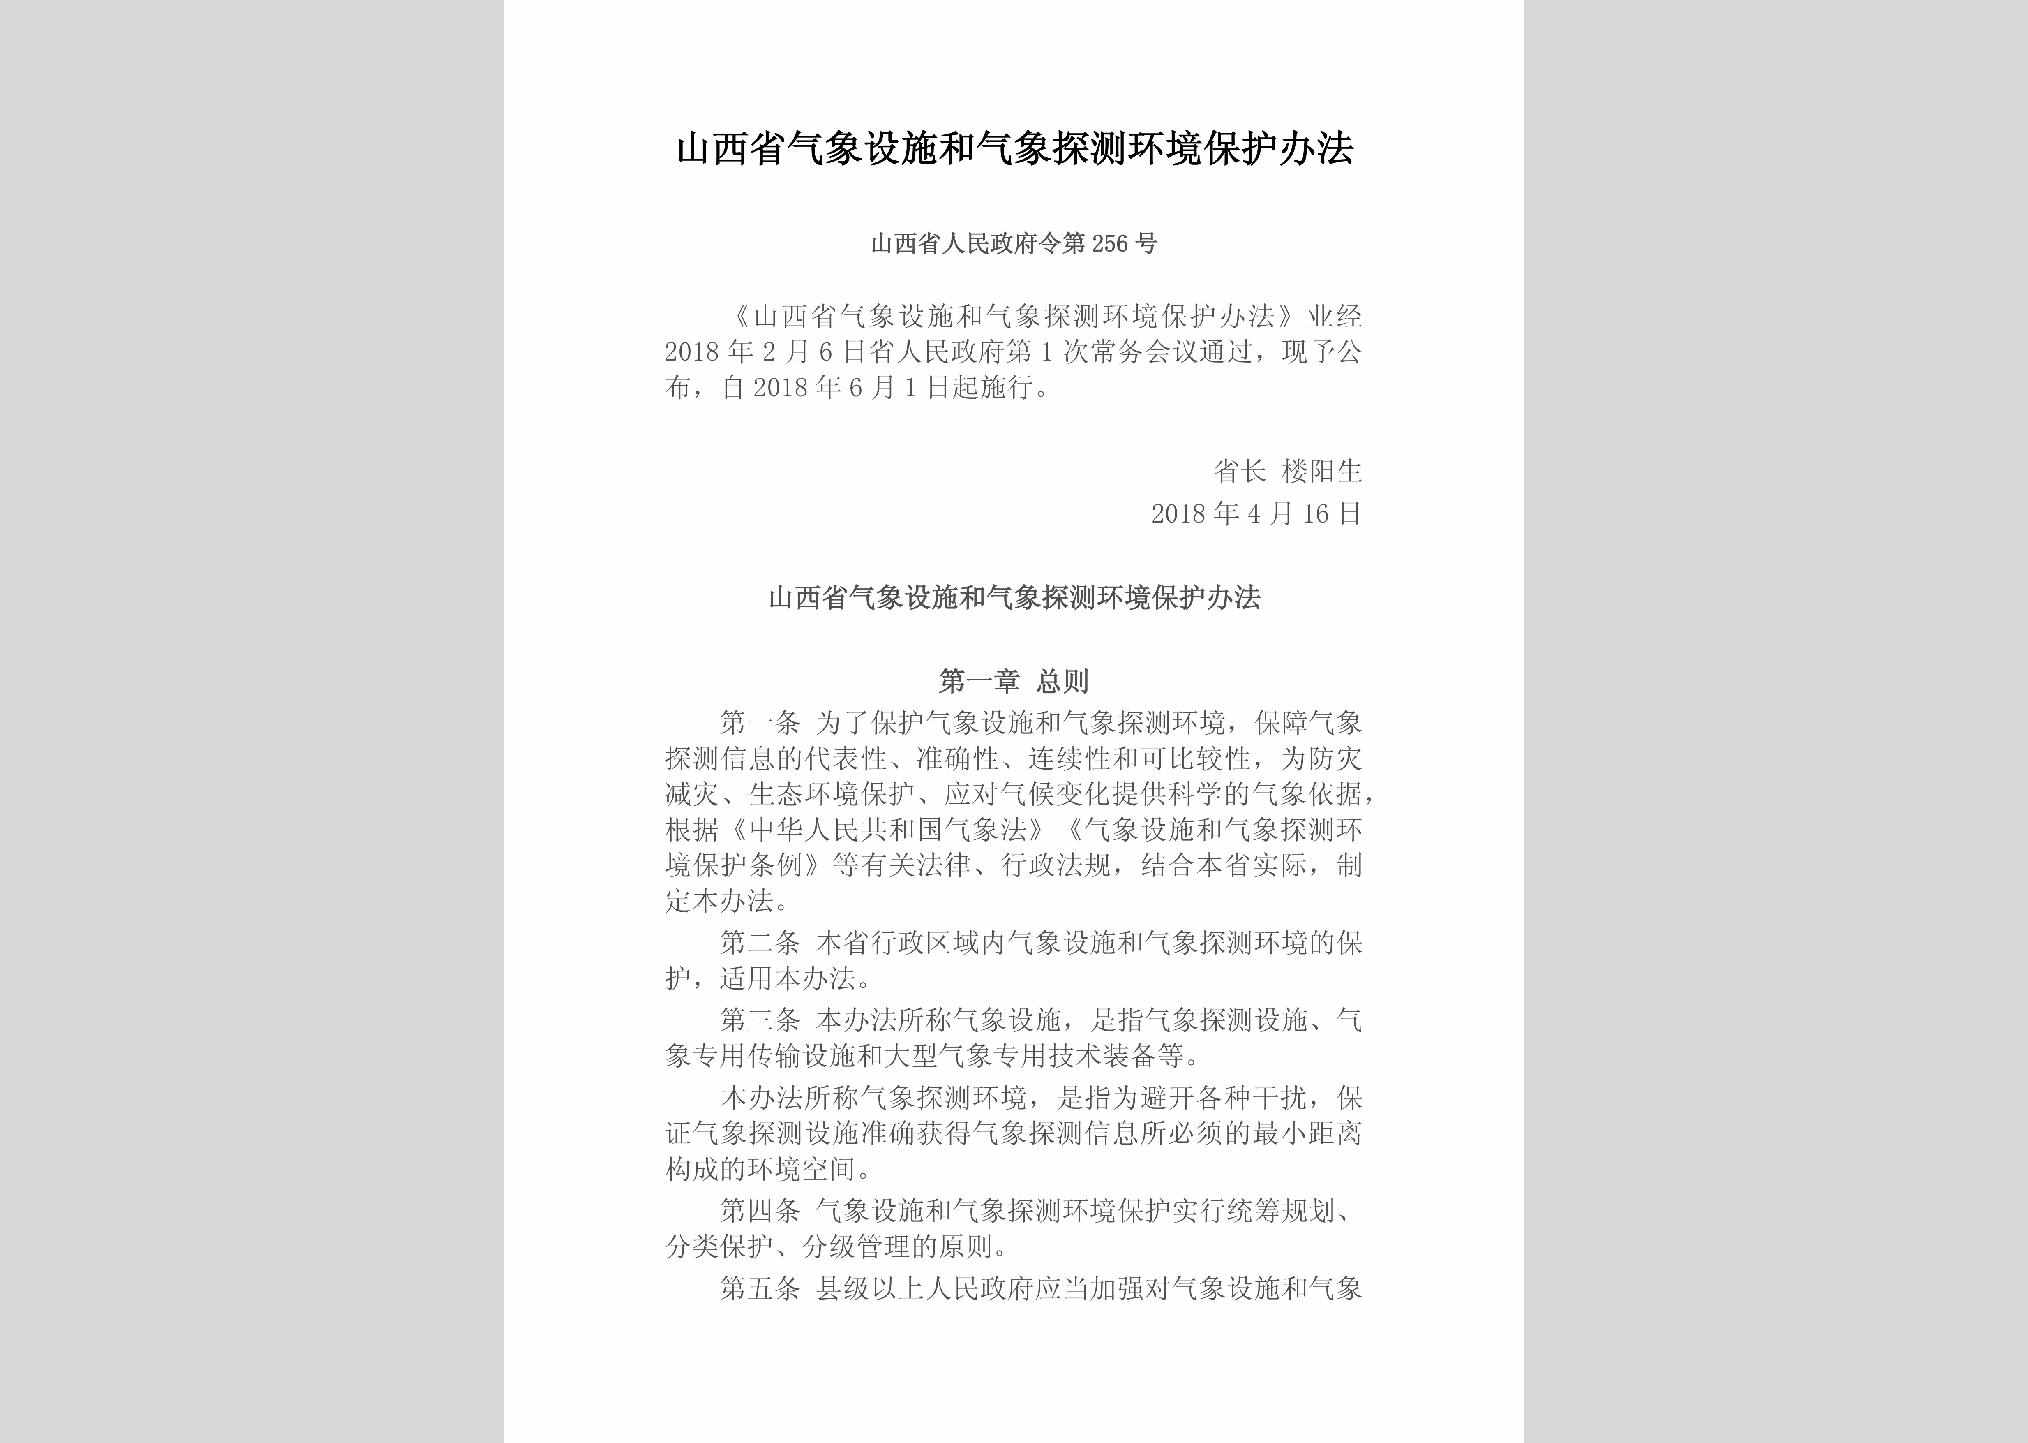 山西省人民政府令第256号：山西省气象设施和气象探测环境保护办法